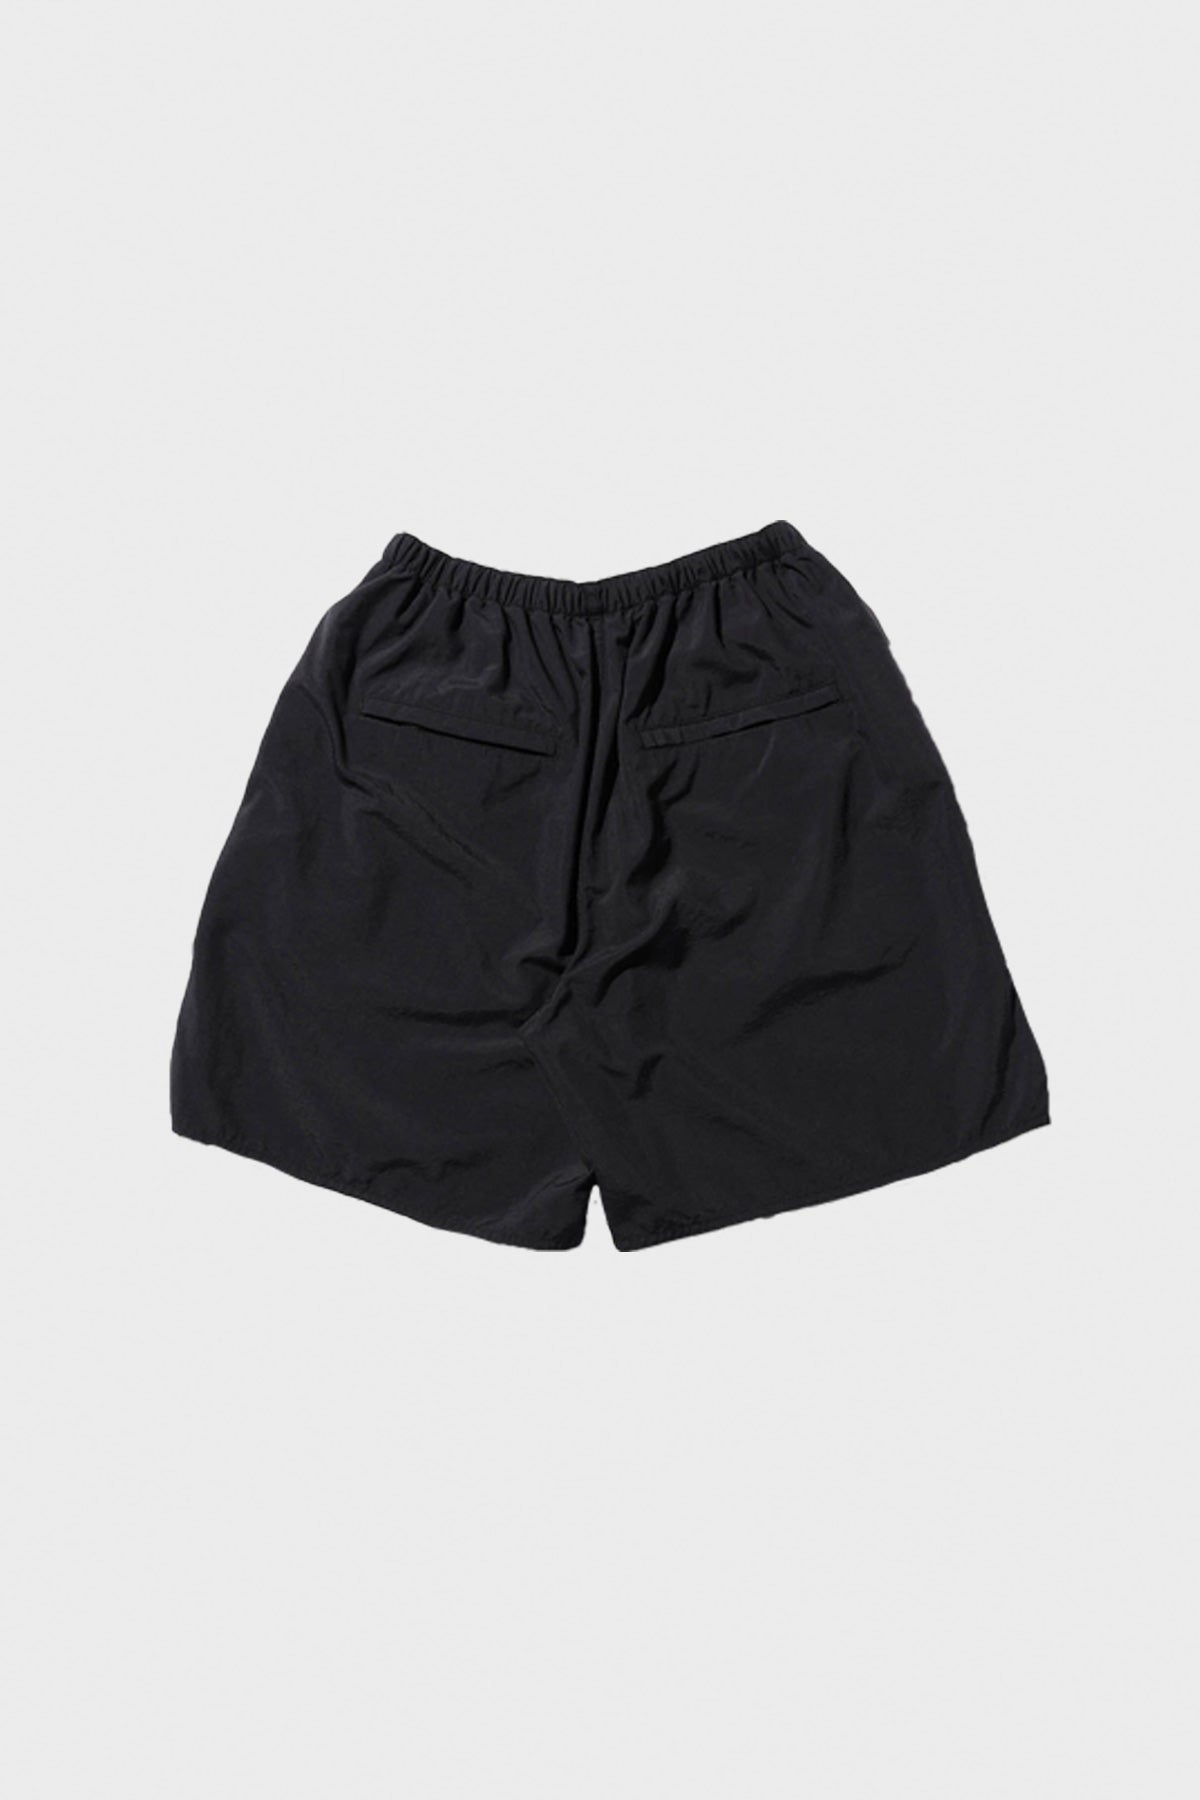 MIL Athletic Shorts Nylon - Black - 2